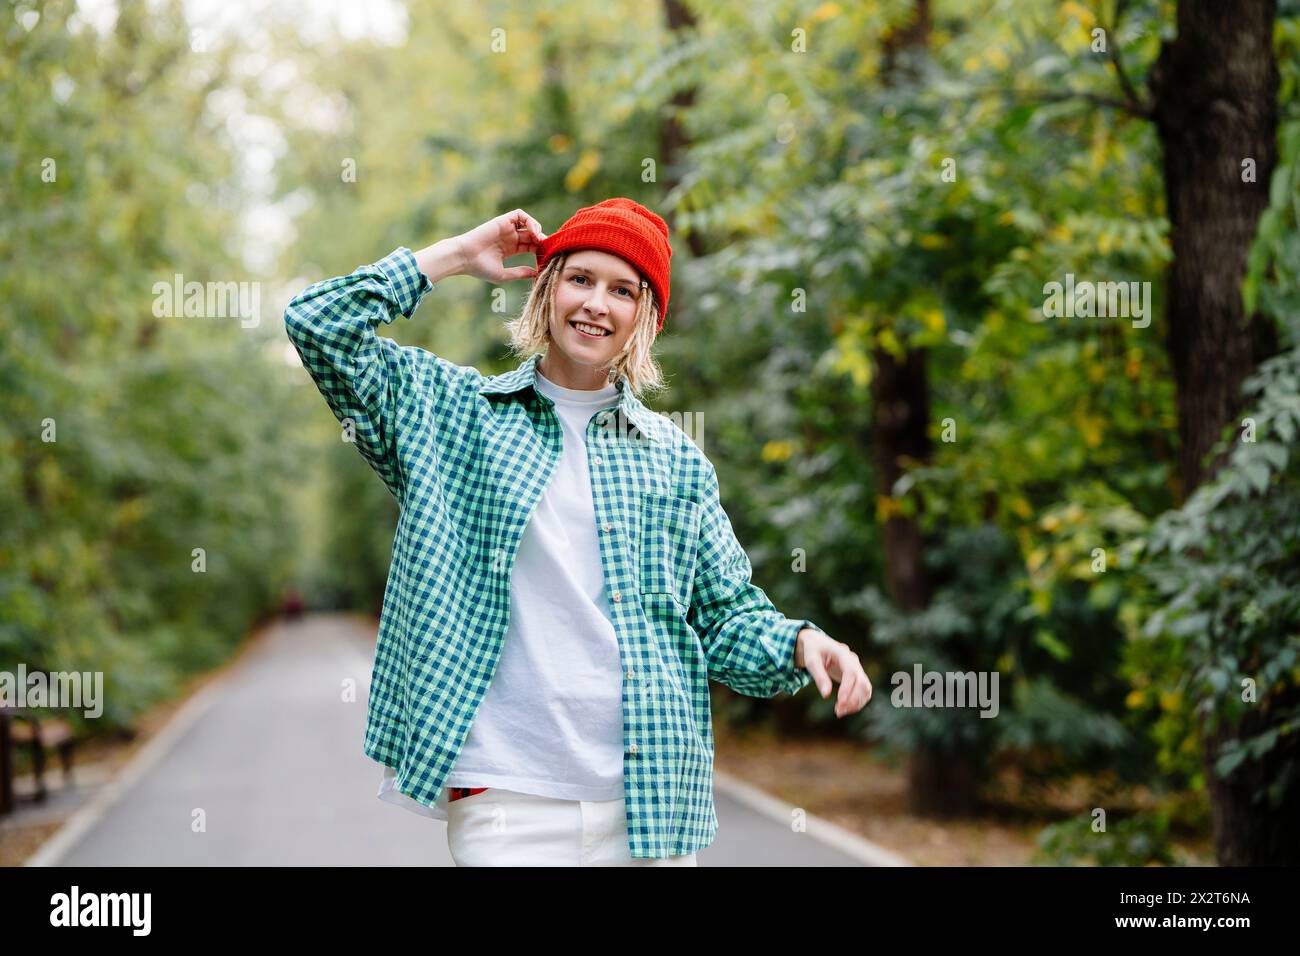 Lächelnde junge Frau mit Strickmütze und kariertem Hemd im Park Stockfoto